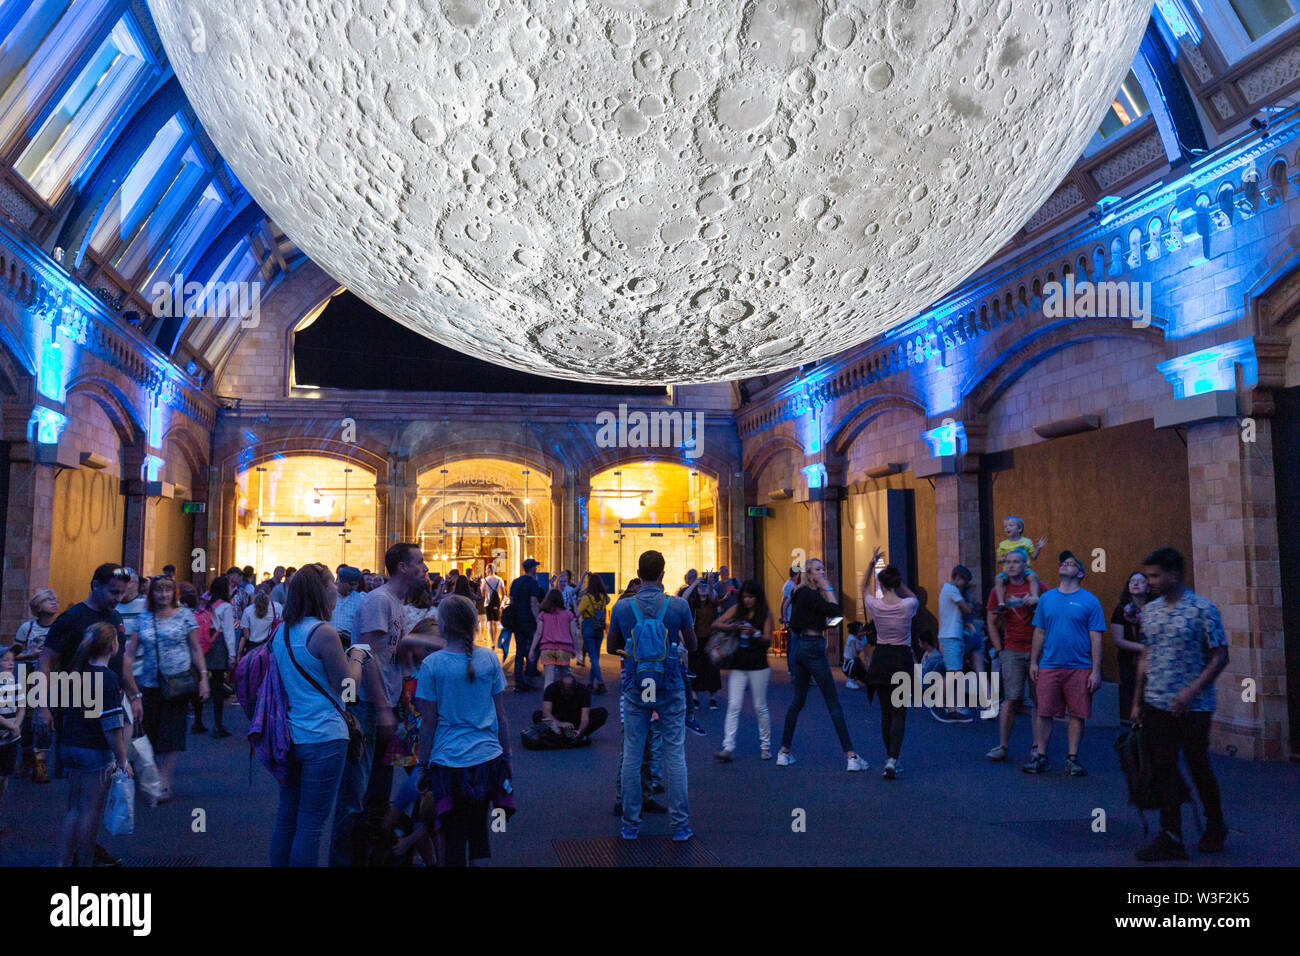 Museo de la Luna - Exposición de un modelo de la luna por el artista Luke Jerram; El Museo de Historia Natural, Londres, Reino Unido Foto de stock